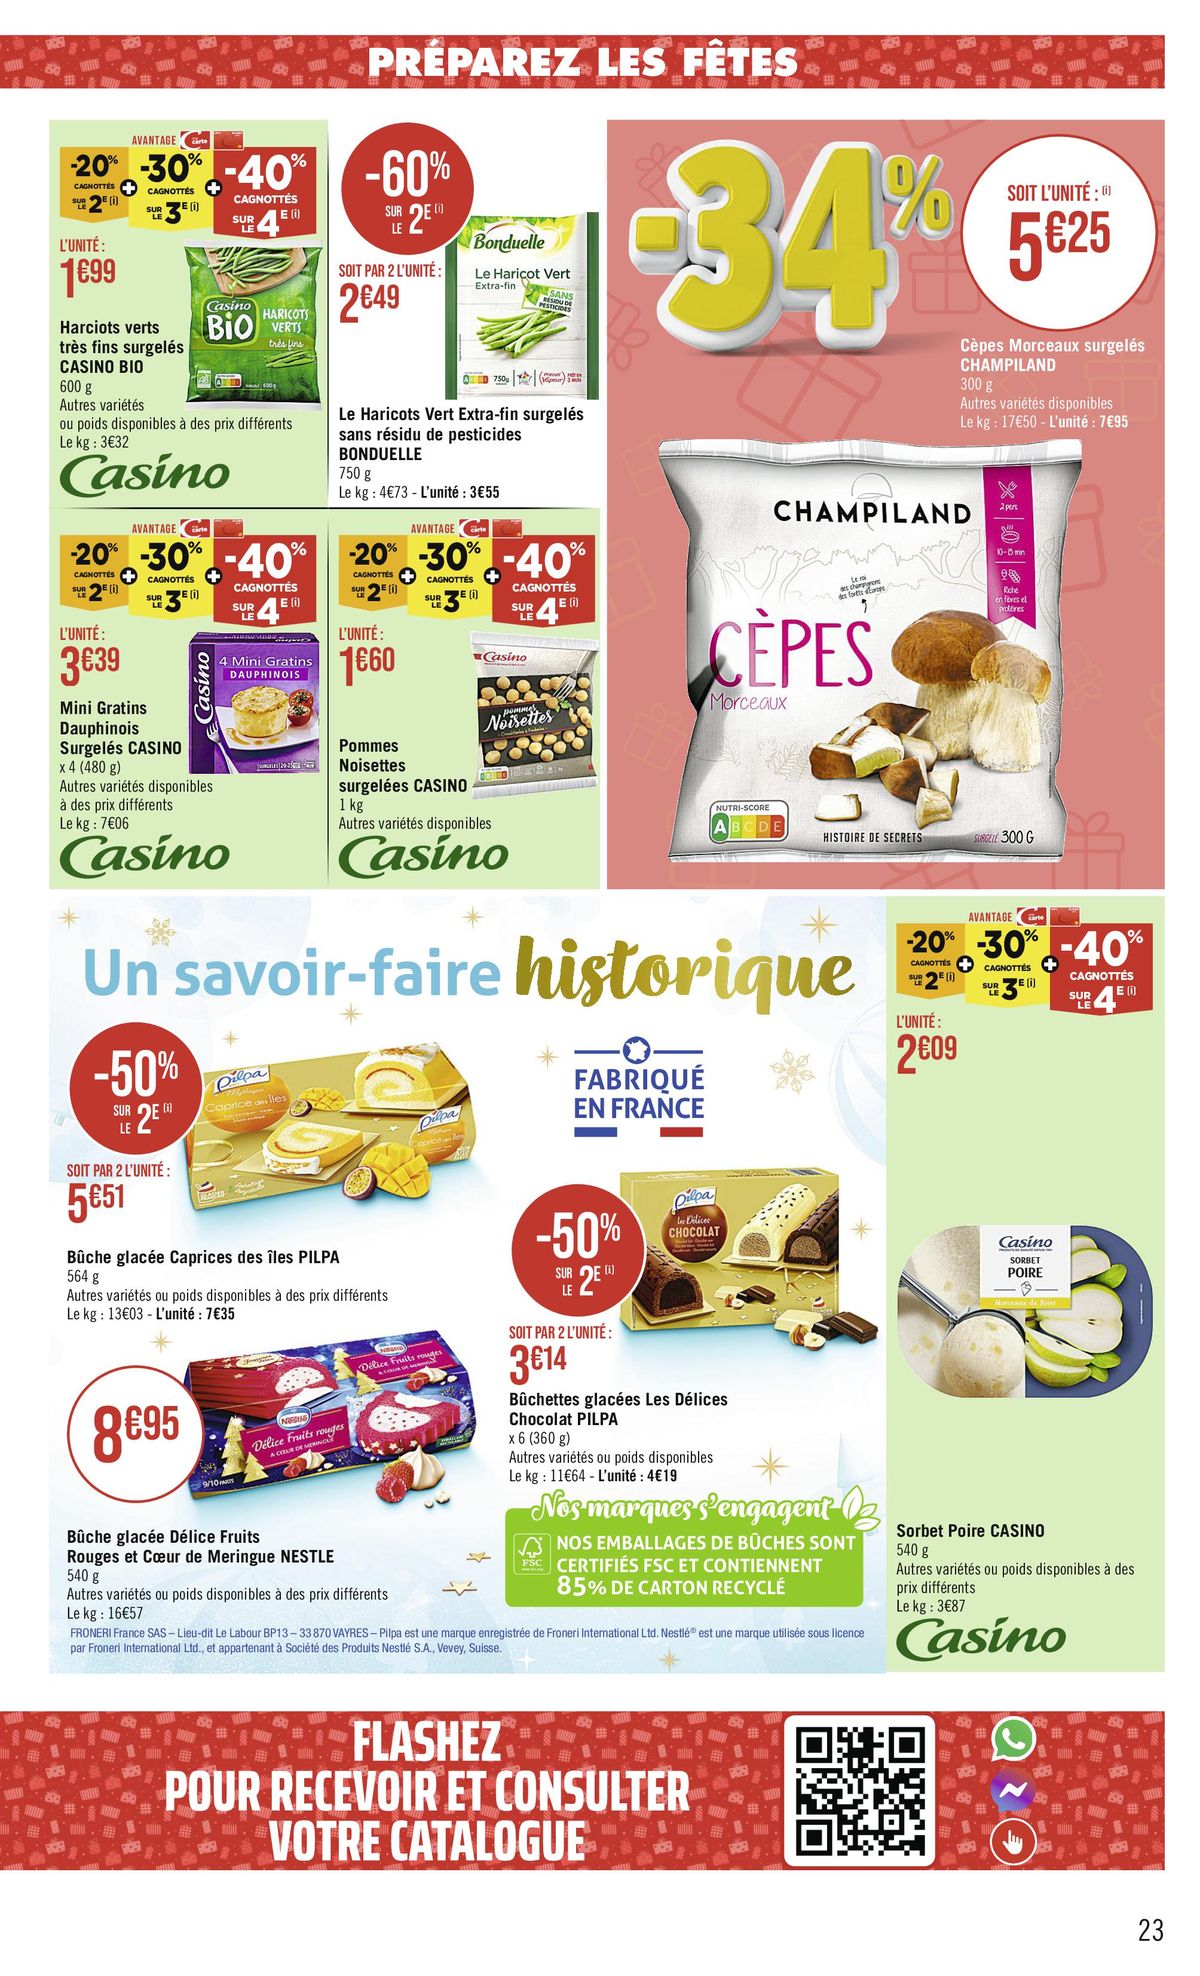 Catalogue -68 % CAGNOTTÉS SUR LE 2€, page 00023